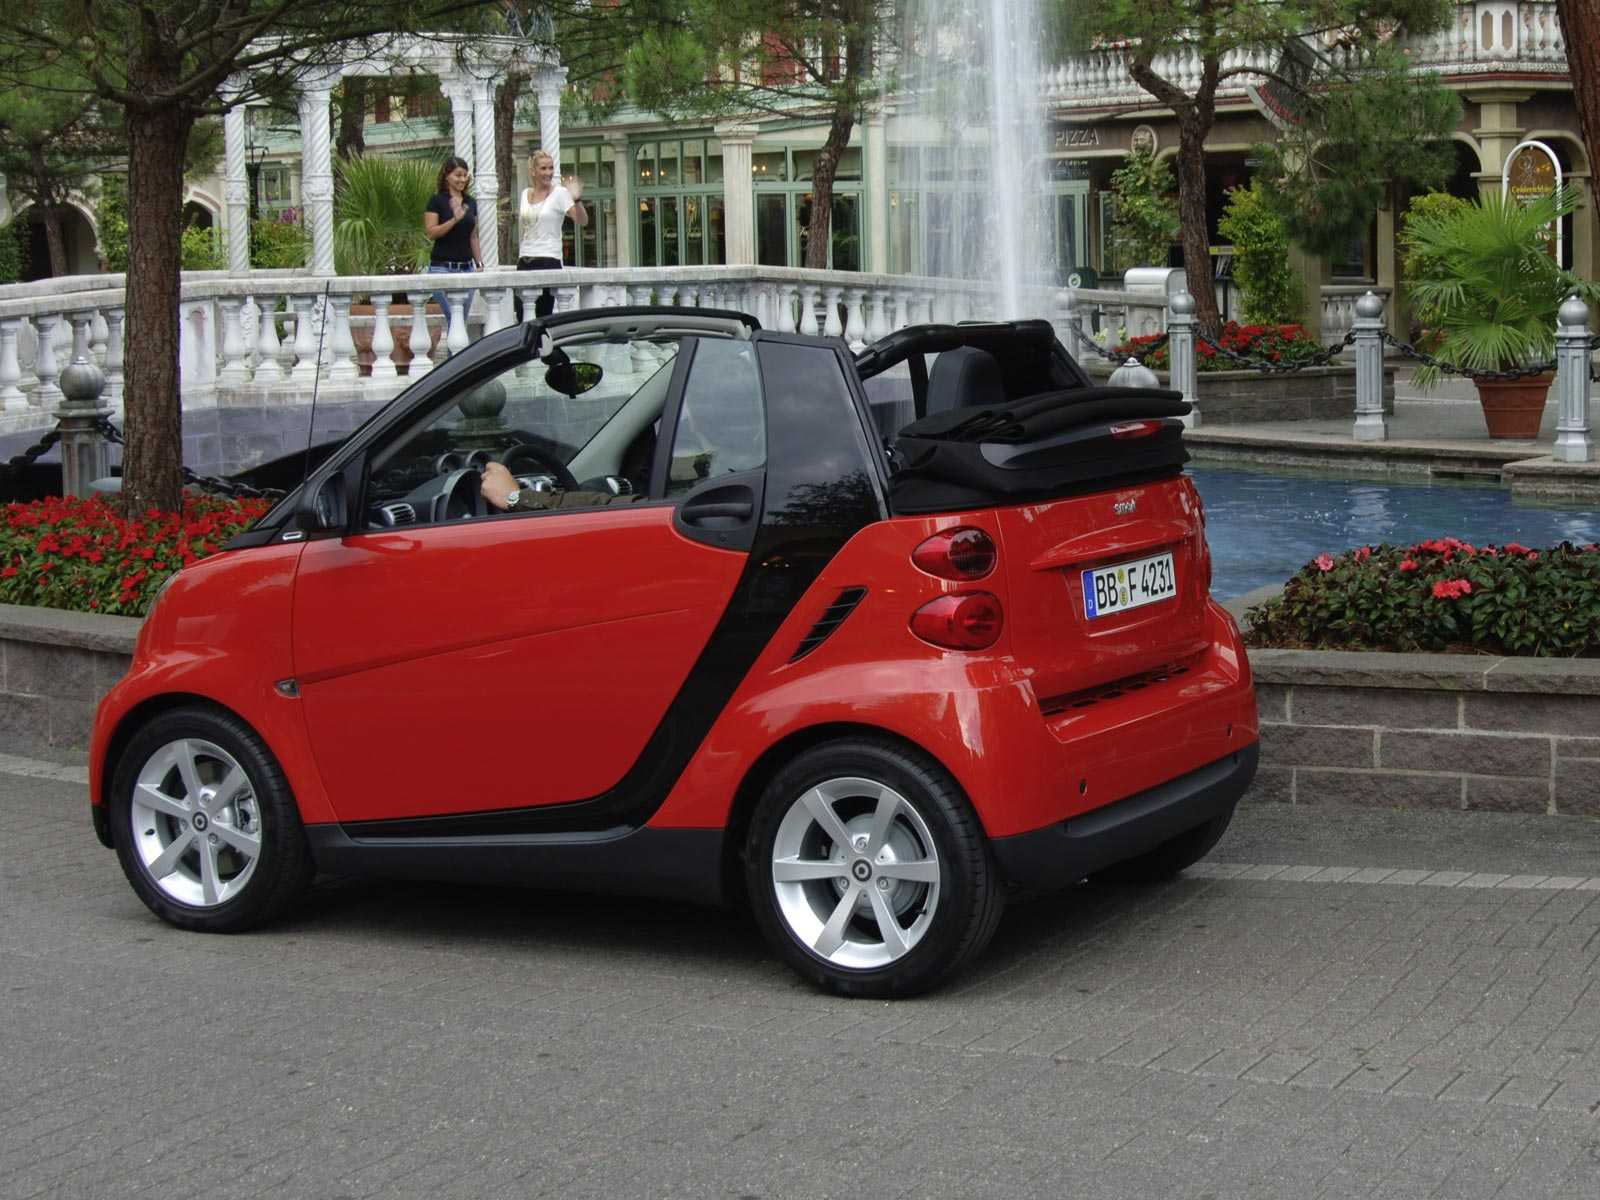 Автомобили Smart City Cabrio и Coupe сразу же проектировались для эксплуатации в городских условиях